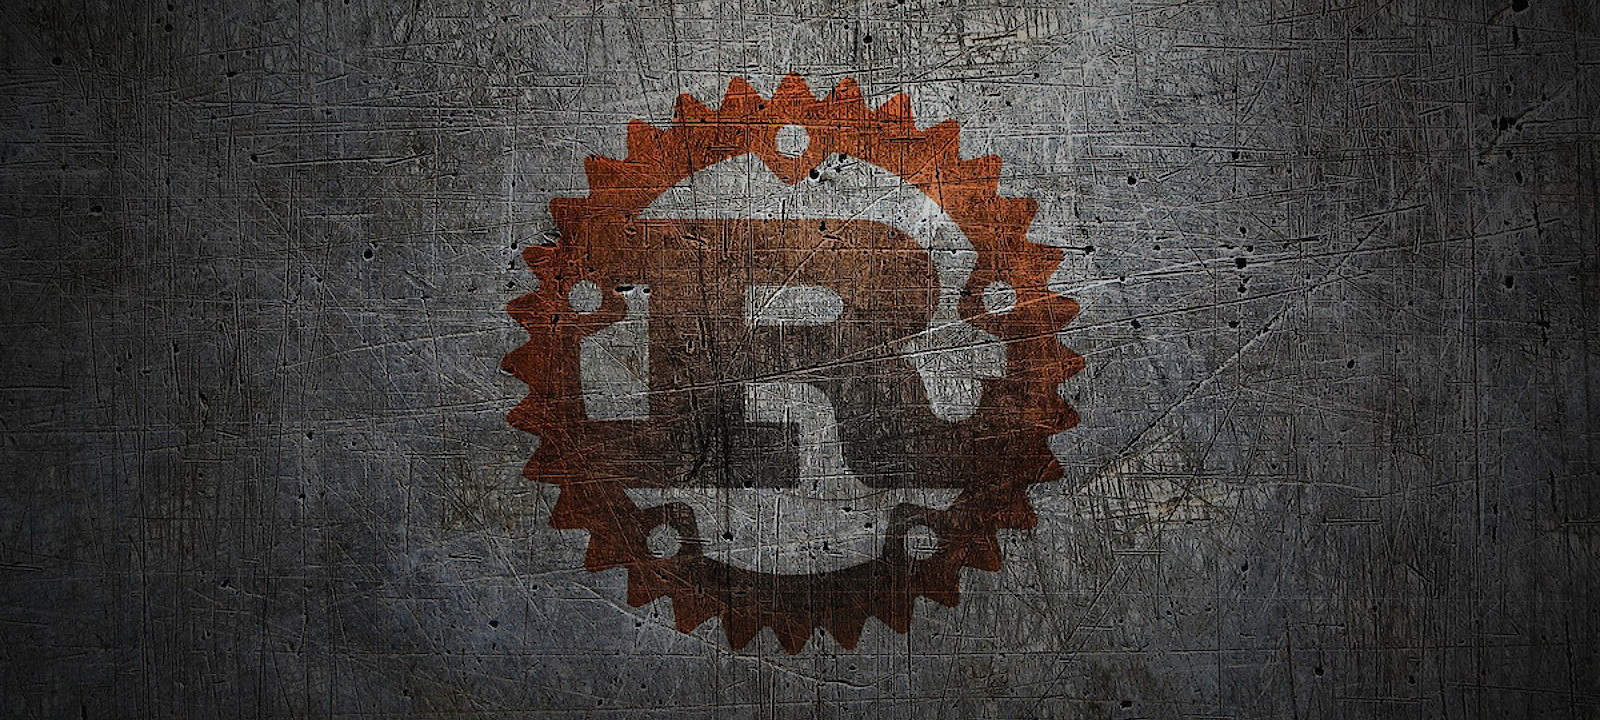 Rust pattern matching фото 19